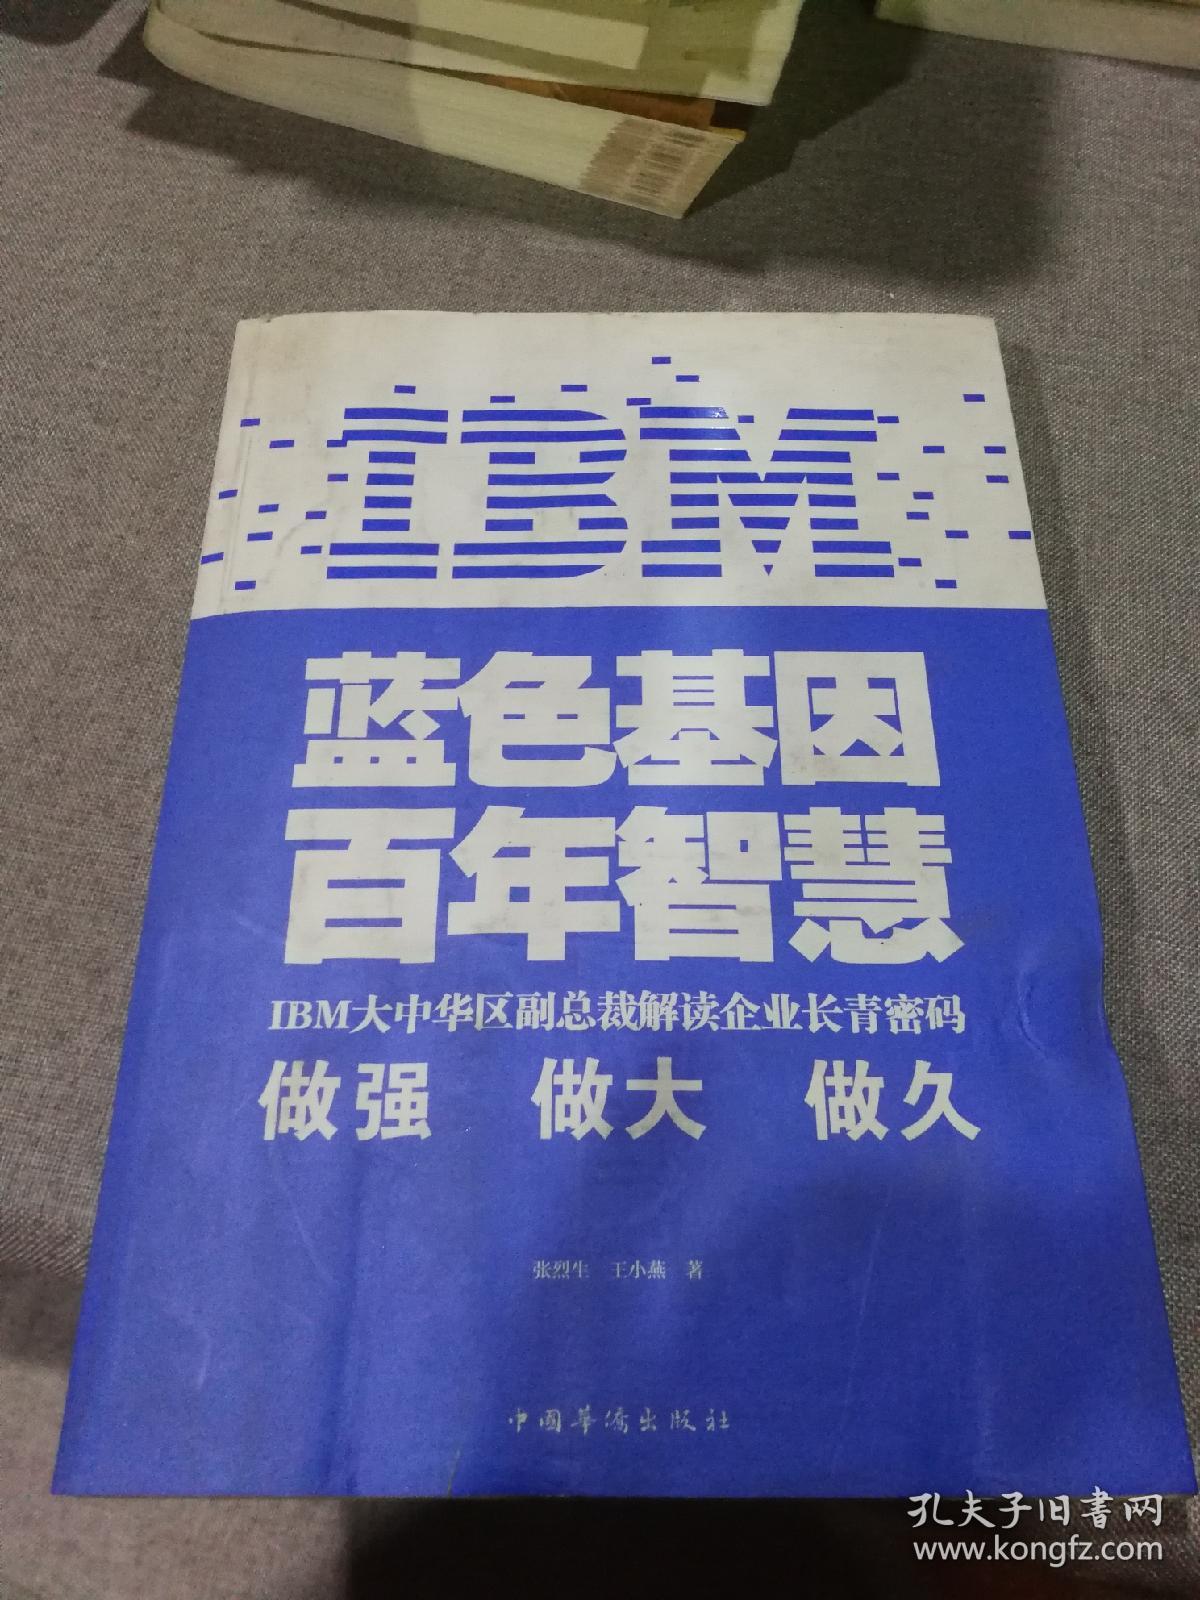 IBM:蓝色基因 百年智慧开胶